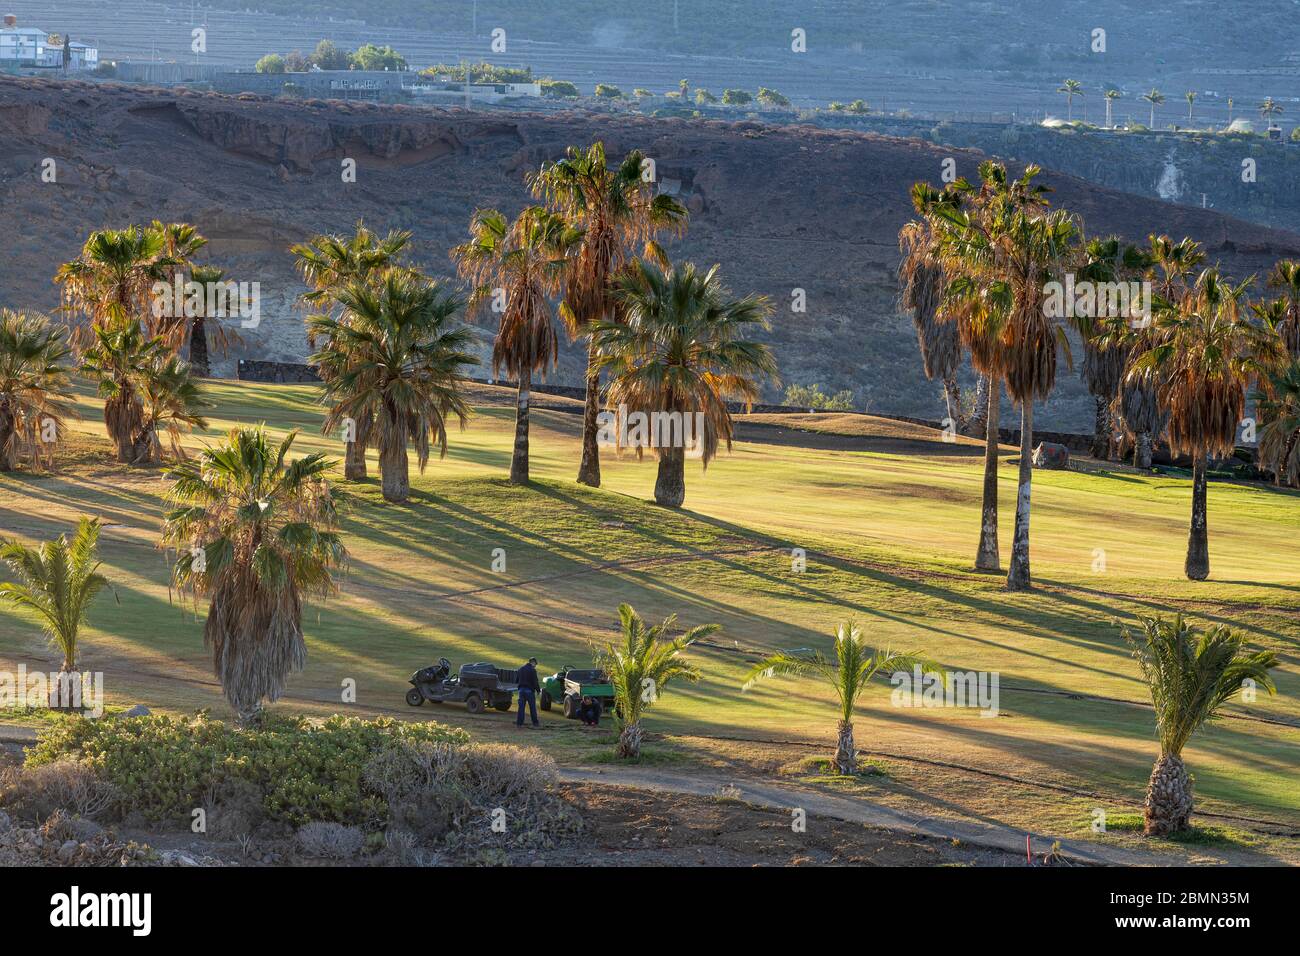 Campi da golf di Adeje con palme vuote, tranne per il personale addetto alla manutenzione durante il convid 19 nell'area turistica di Costa Adeje, Foto Stock